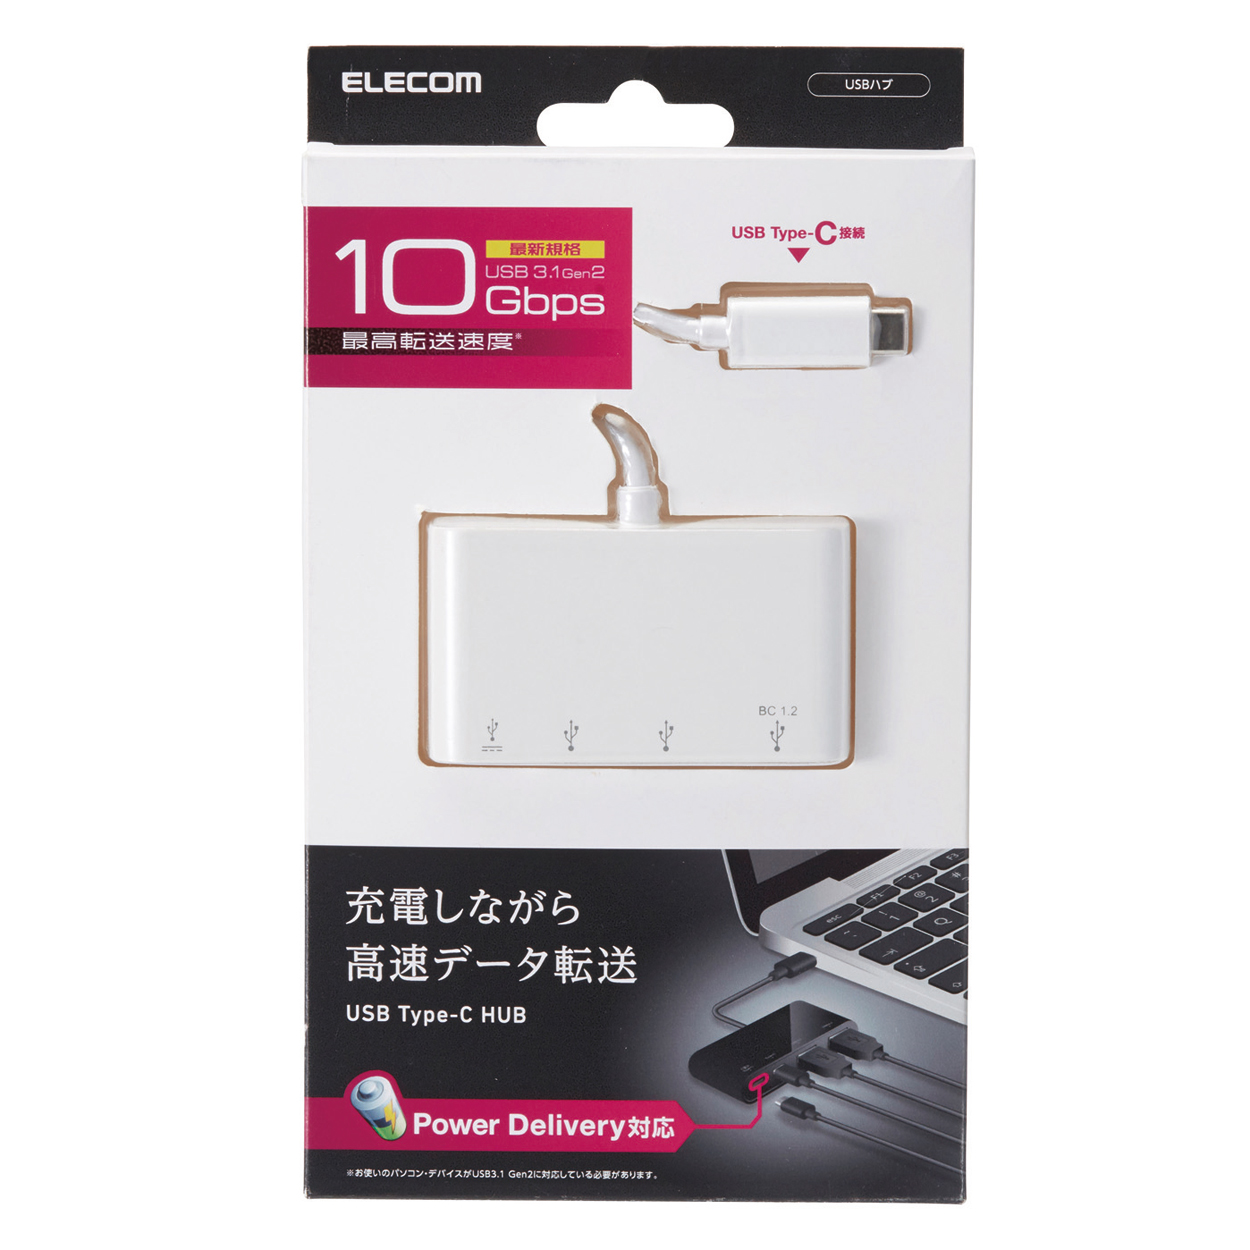 USB Type-Cコネクタ搭載USBハブ(USB PD対応) | エレコムダイレクト 